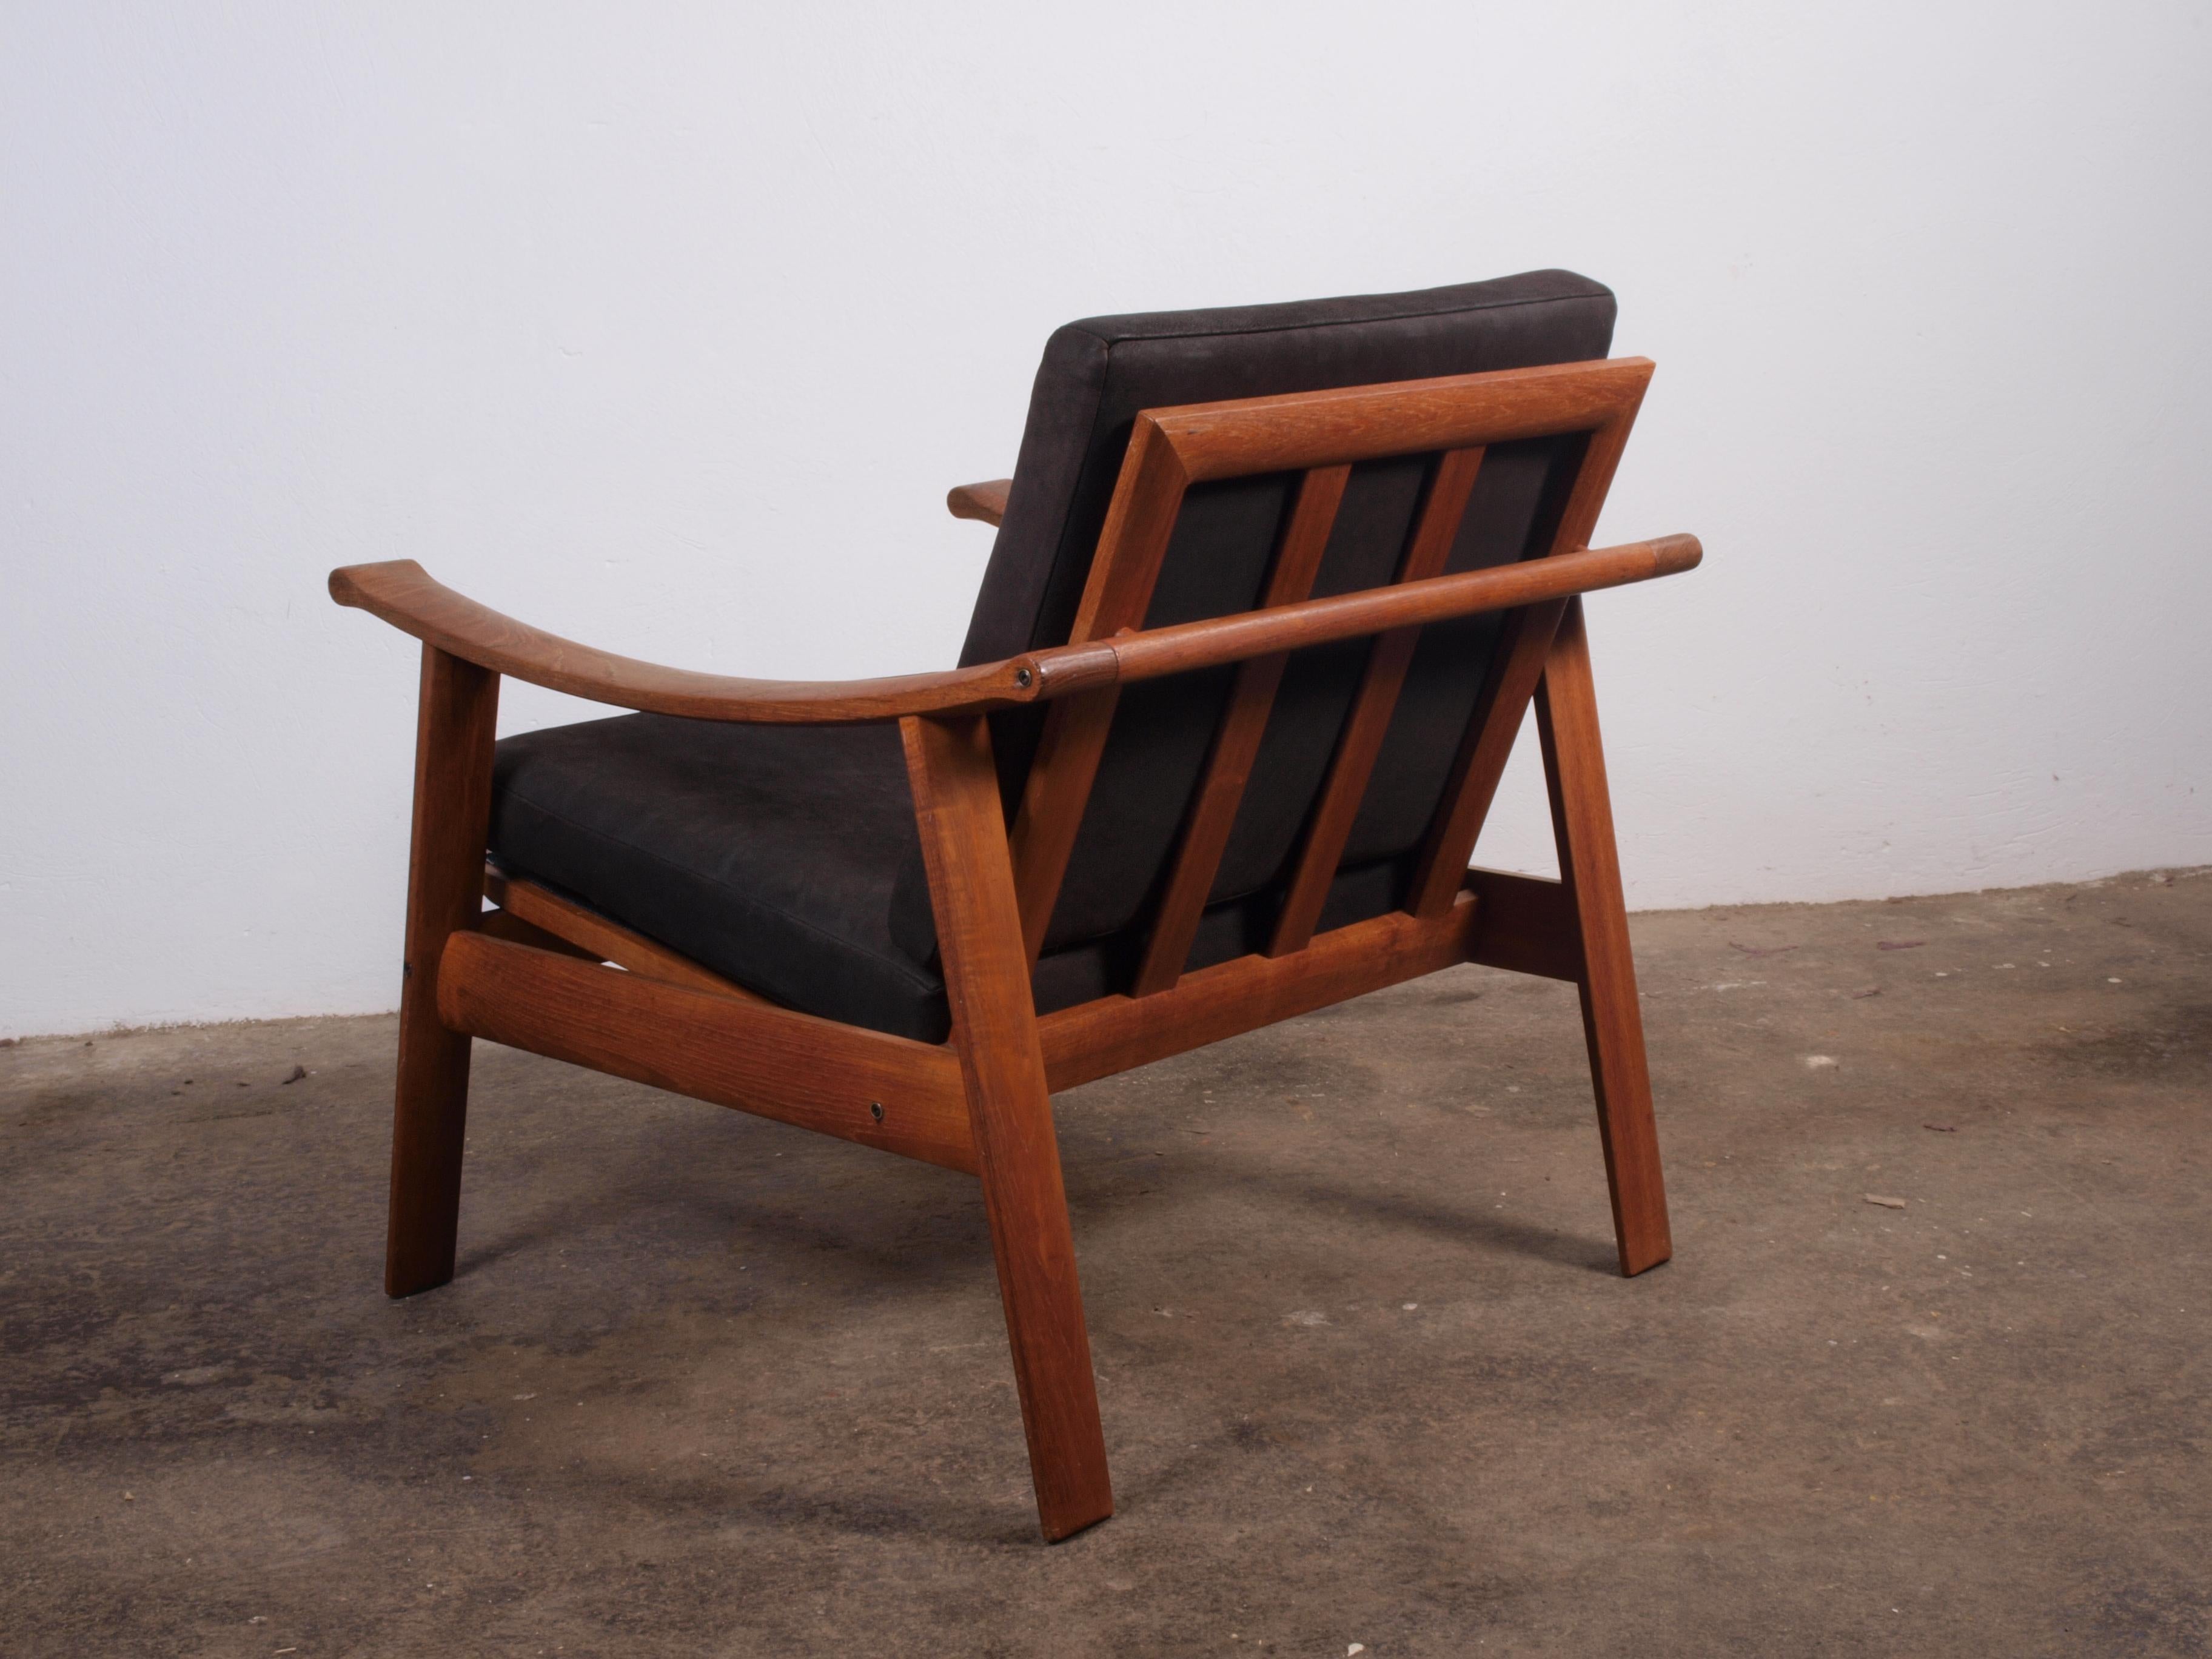 Danish Spade Chairs in Teak in the style of Finn Juhl, 1960s For Sale 6